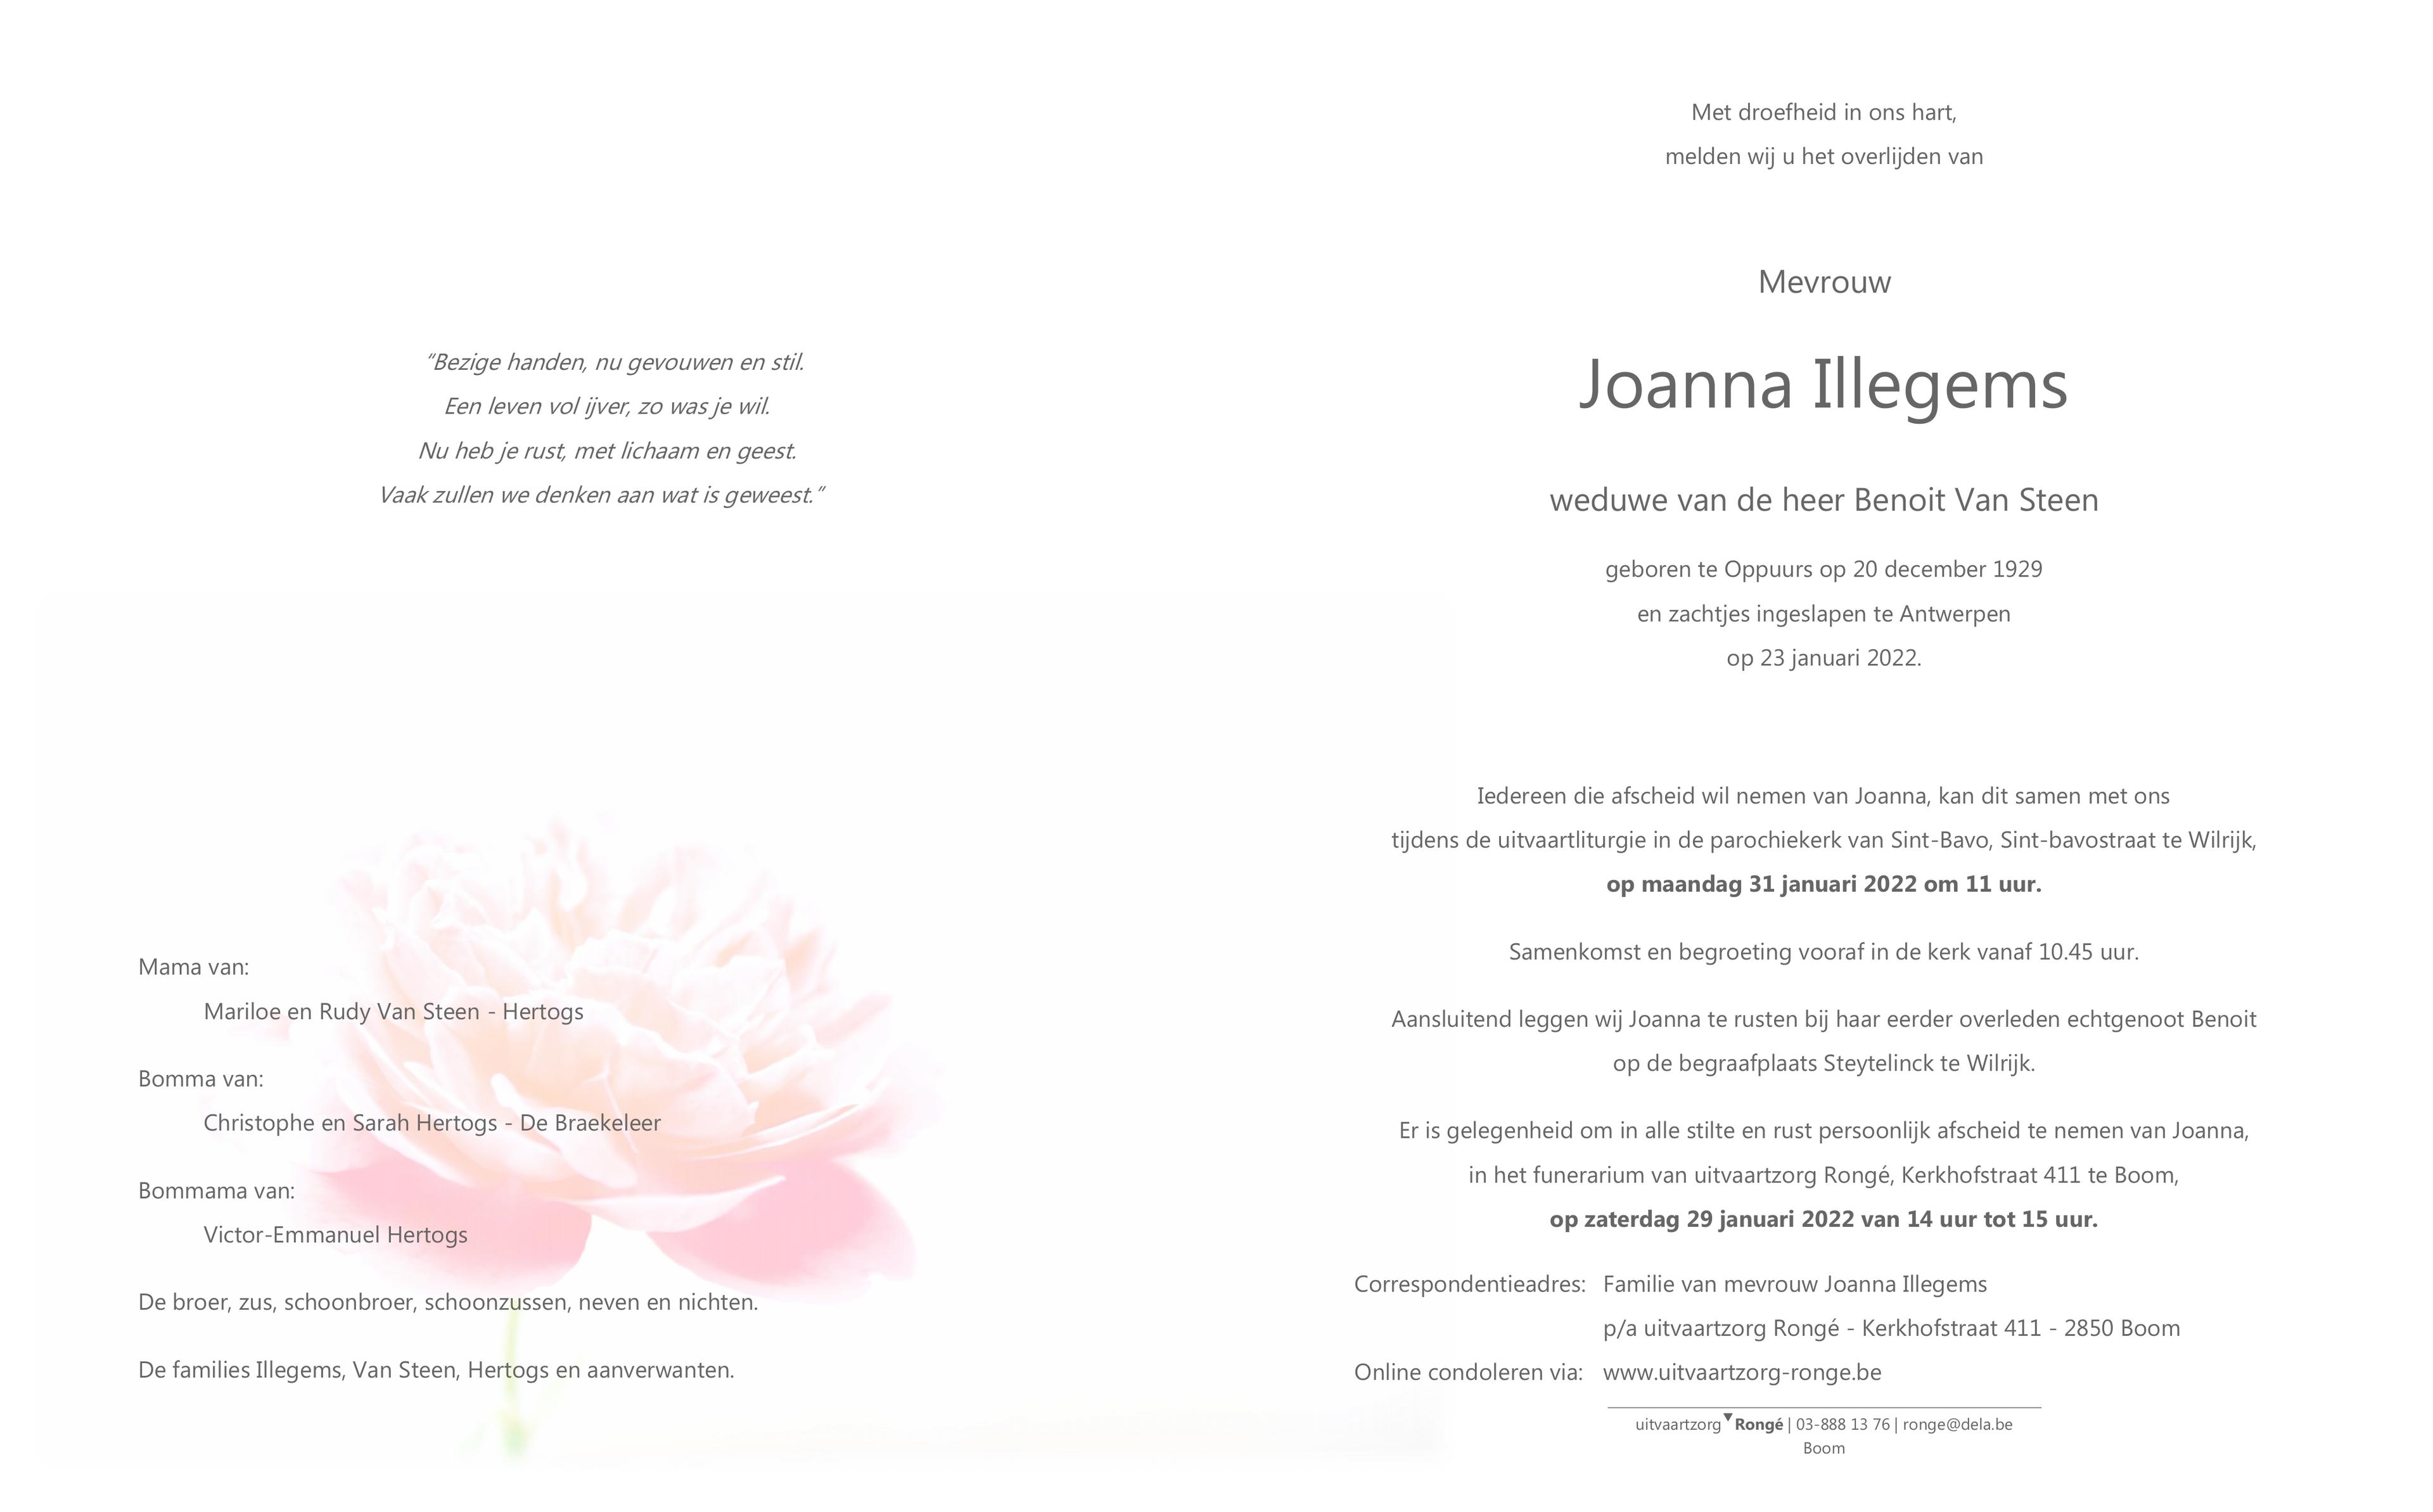 joanna-illegems-23-01-2022-in-gedachten